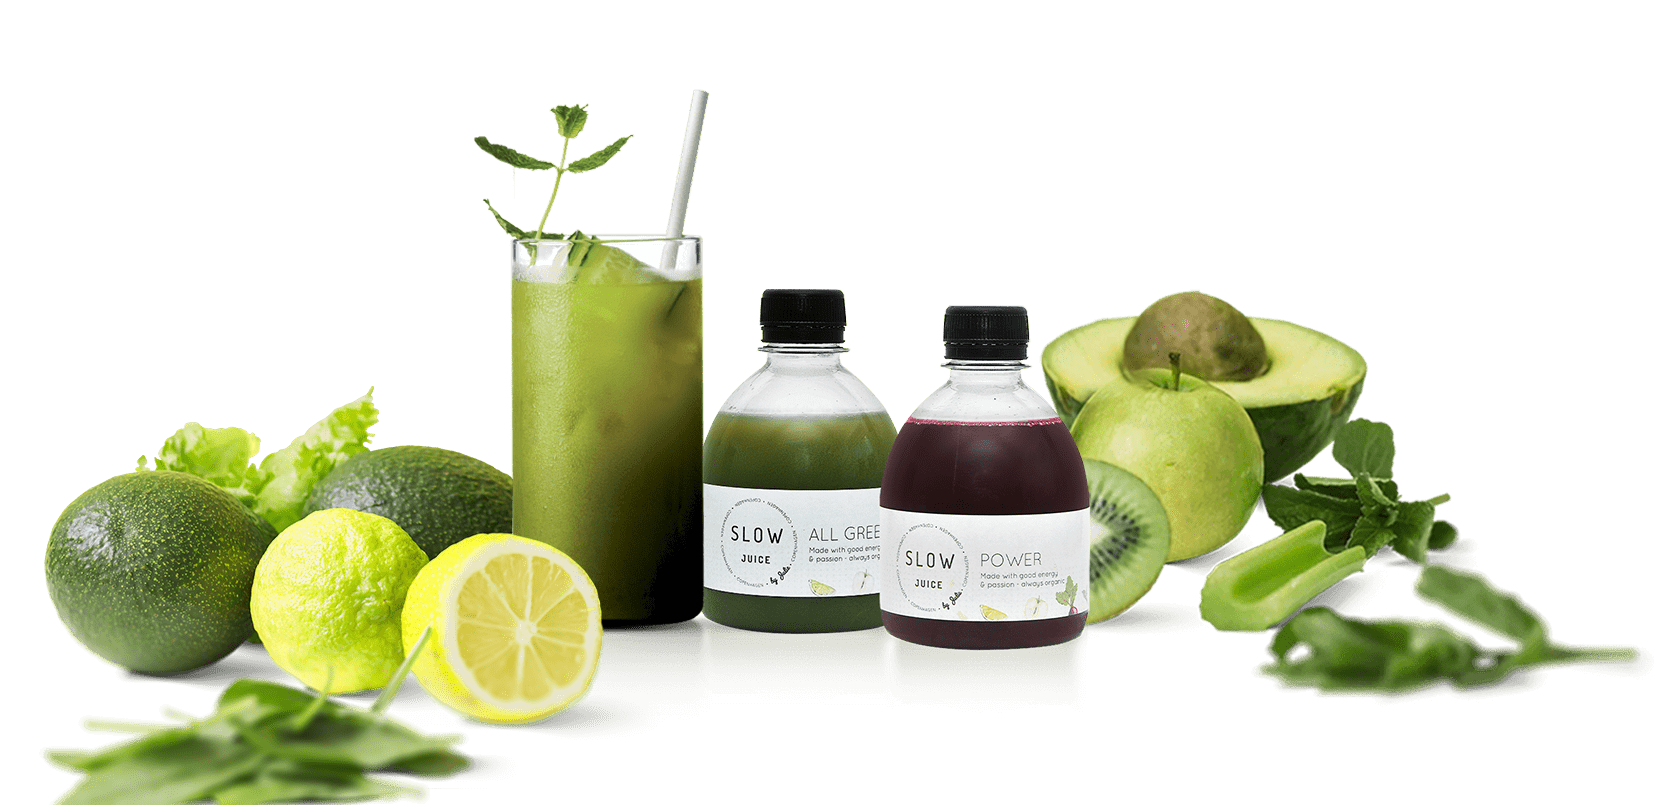 groenjuice-slowjuice-juicekur-grønjuice